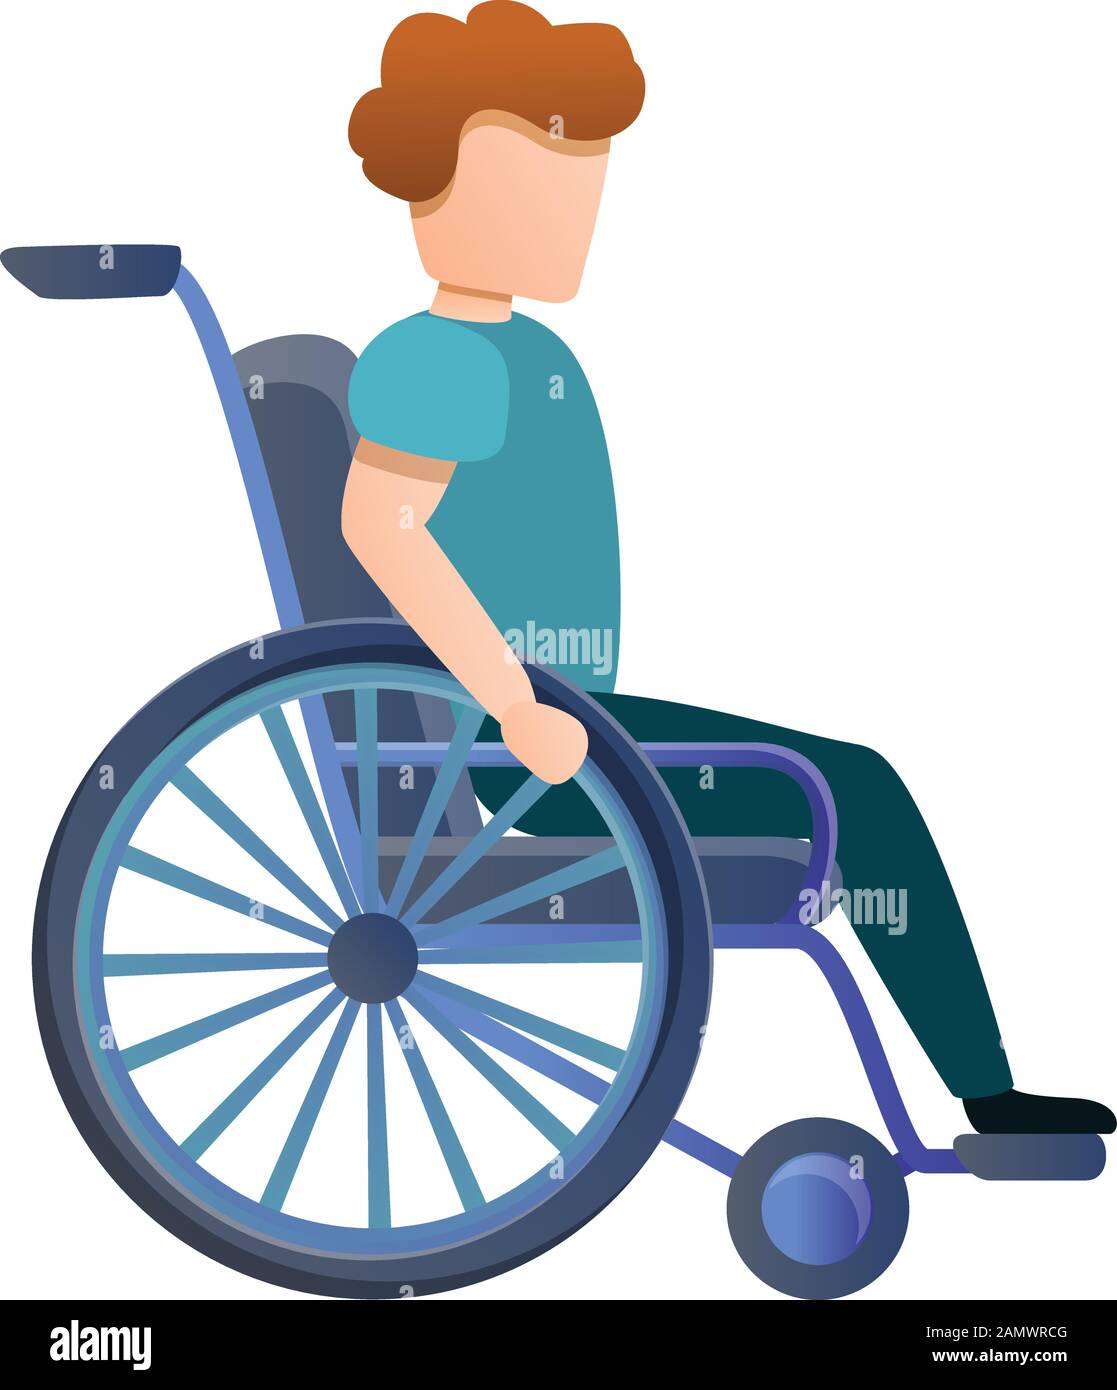 Icono de silla de ruedas para niños pequeños. Dibujo animado del icono del  vector de silla de ruedas de niño joven para el diseño de la tela aislado  en fondo blanco Imagen